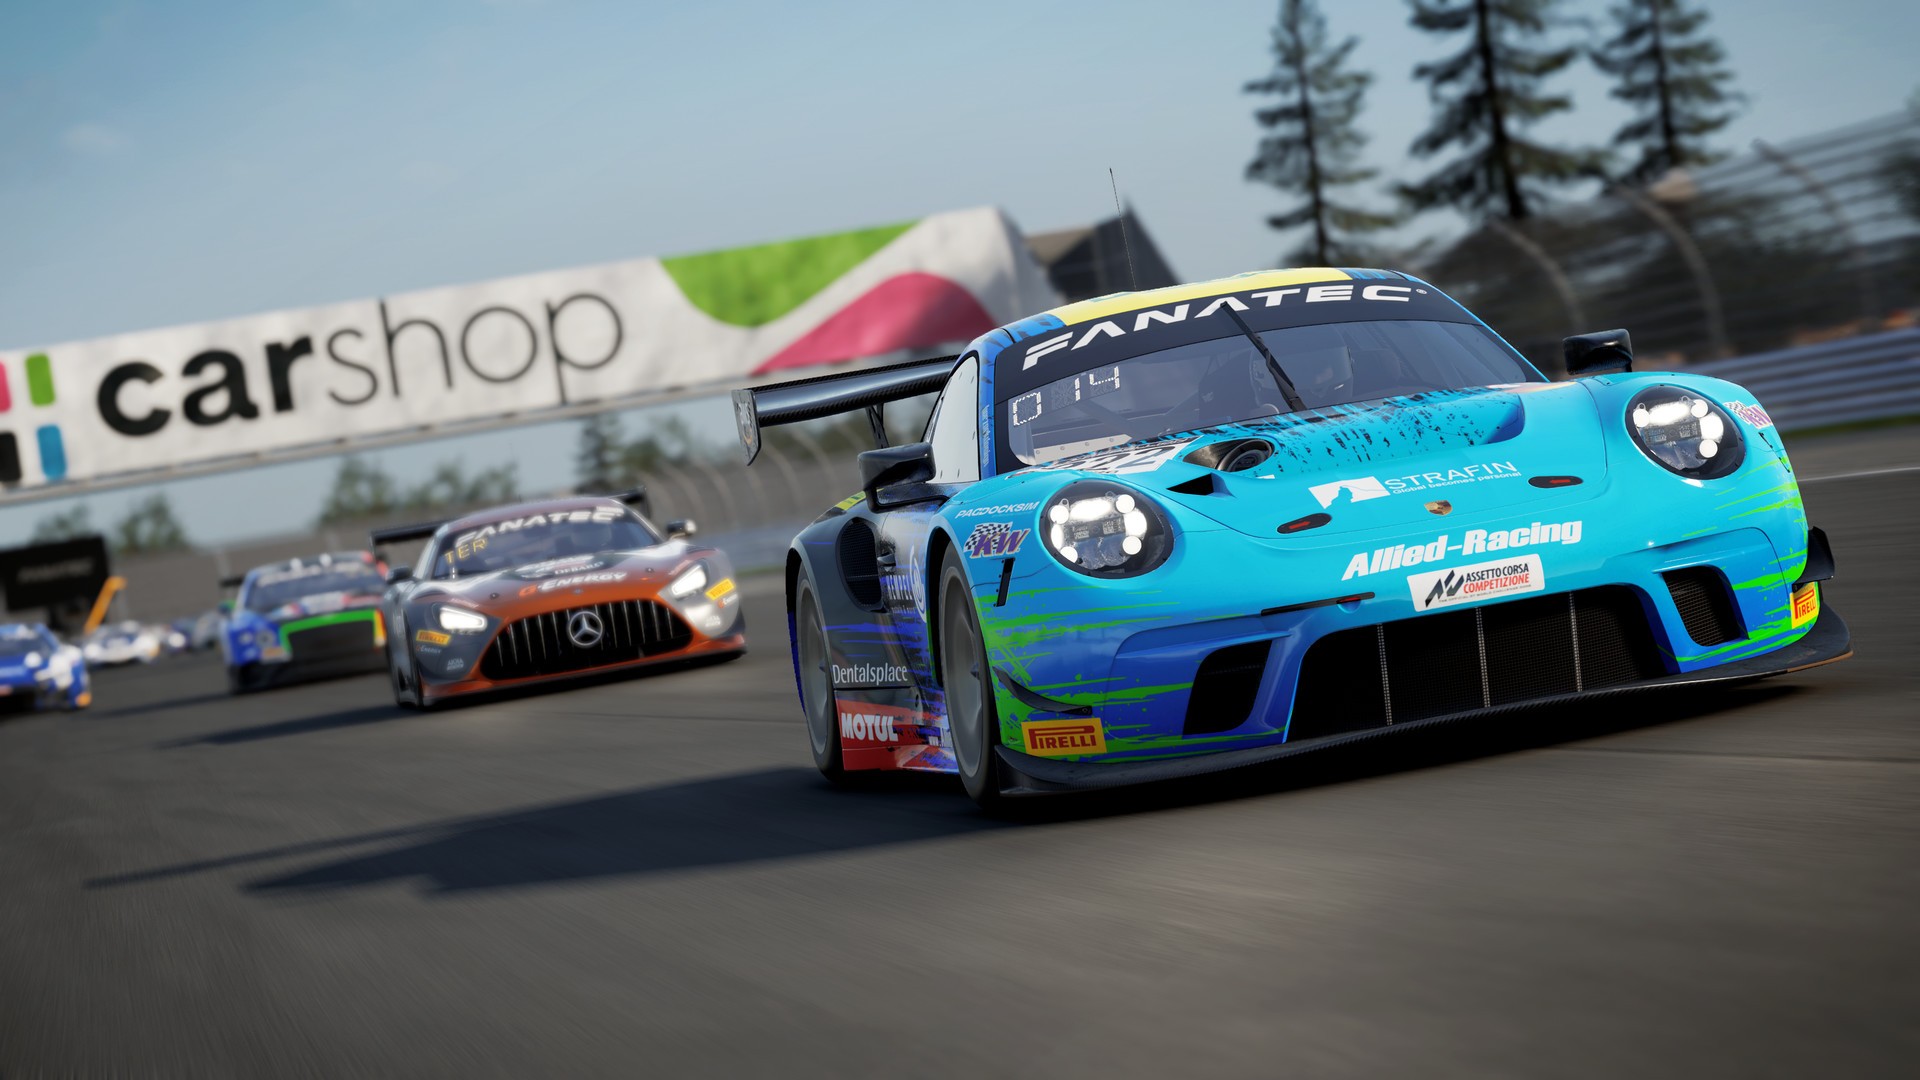 Assetto Corsa Competizione, PC - Steam